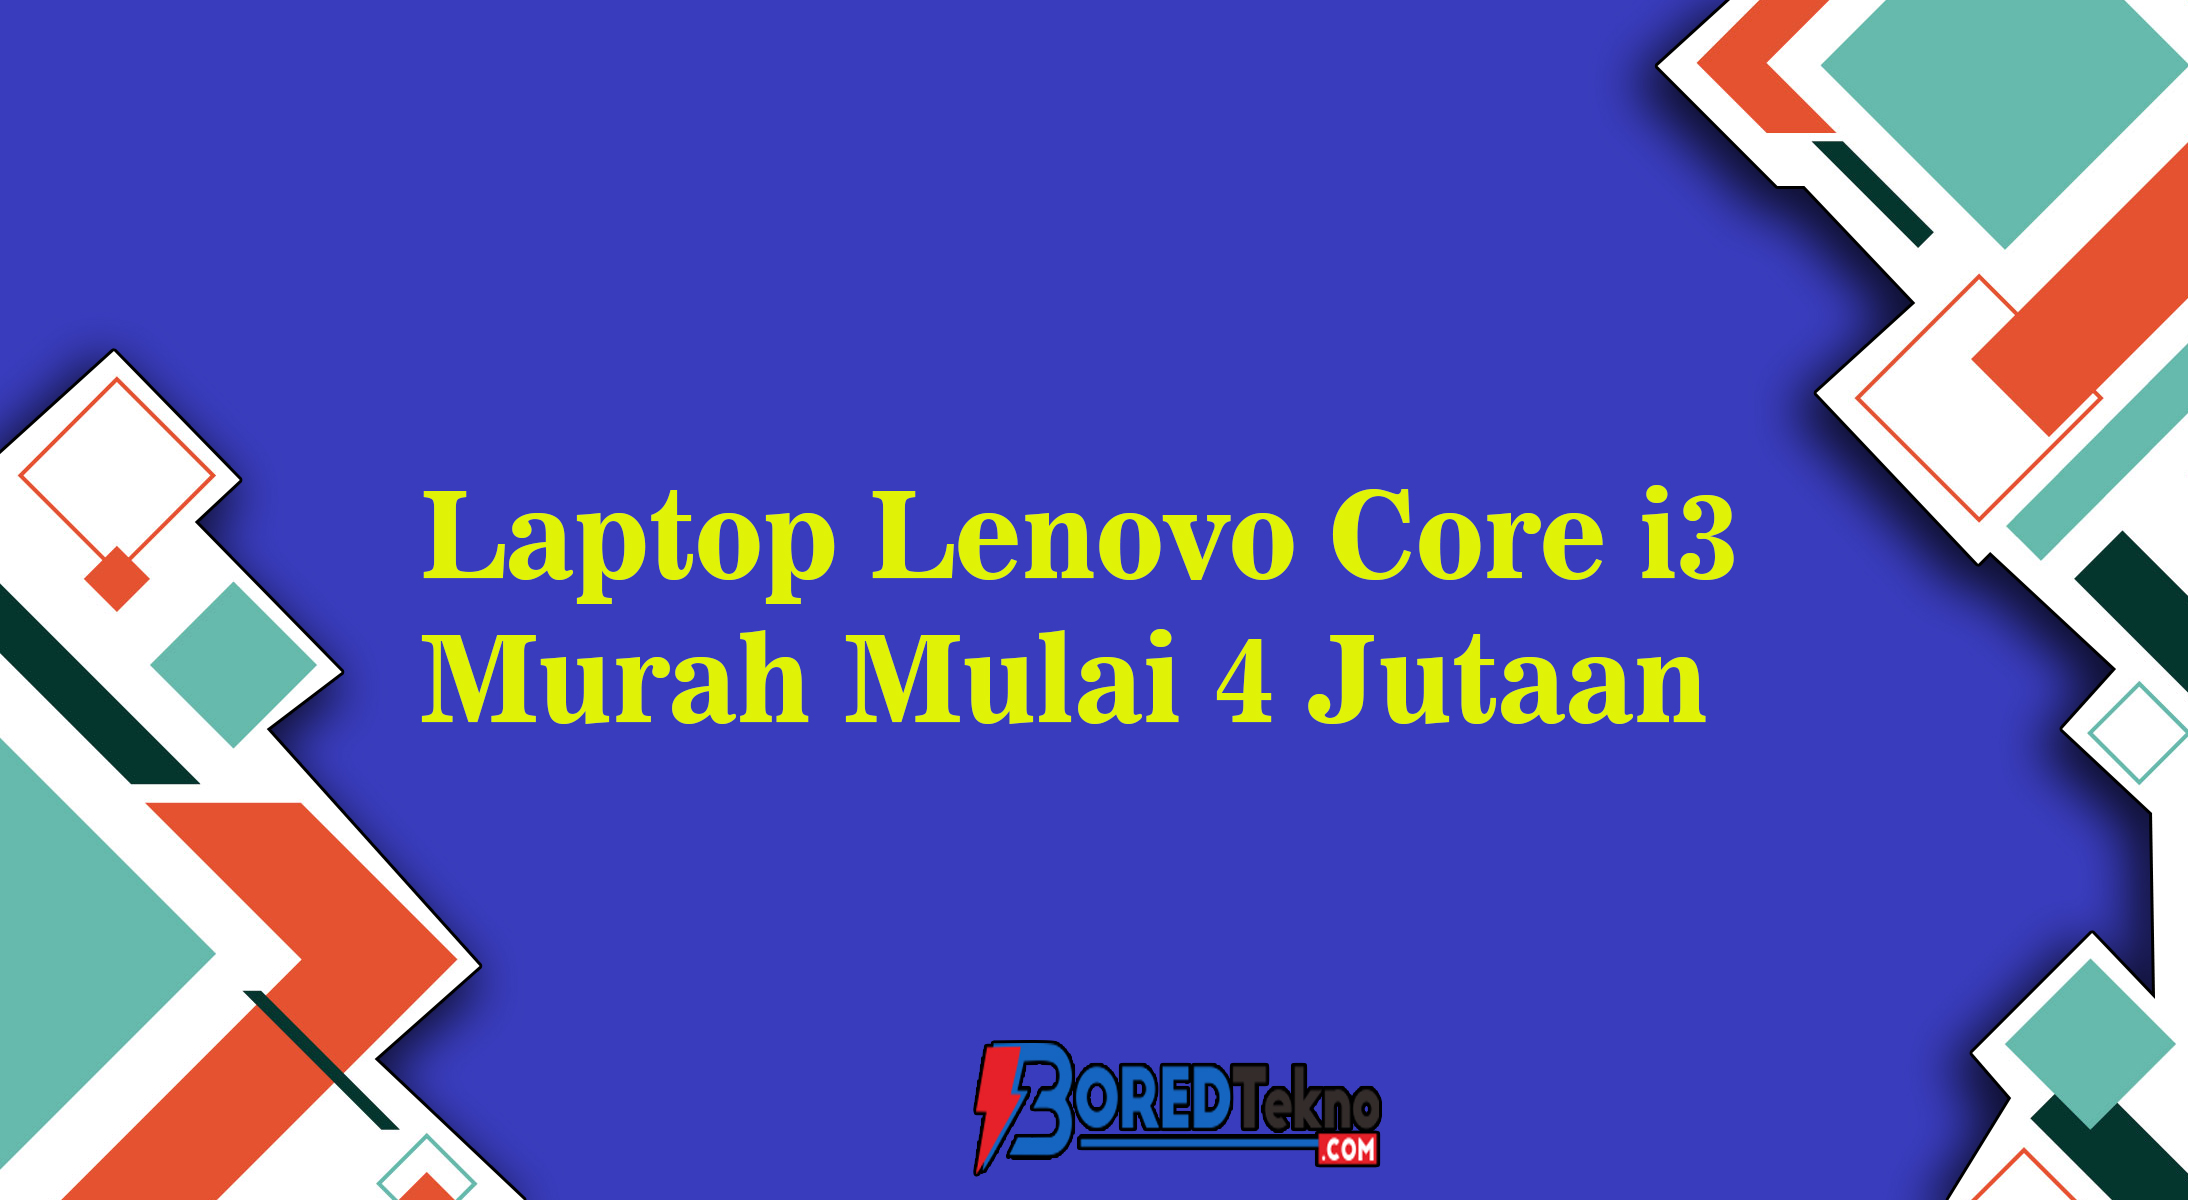 Laptop Lenovo Core i3 Murah Mulai 4 Jutaan